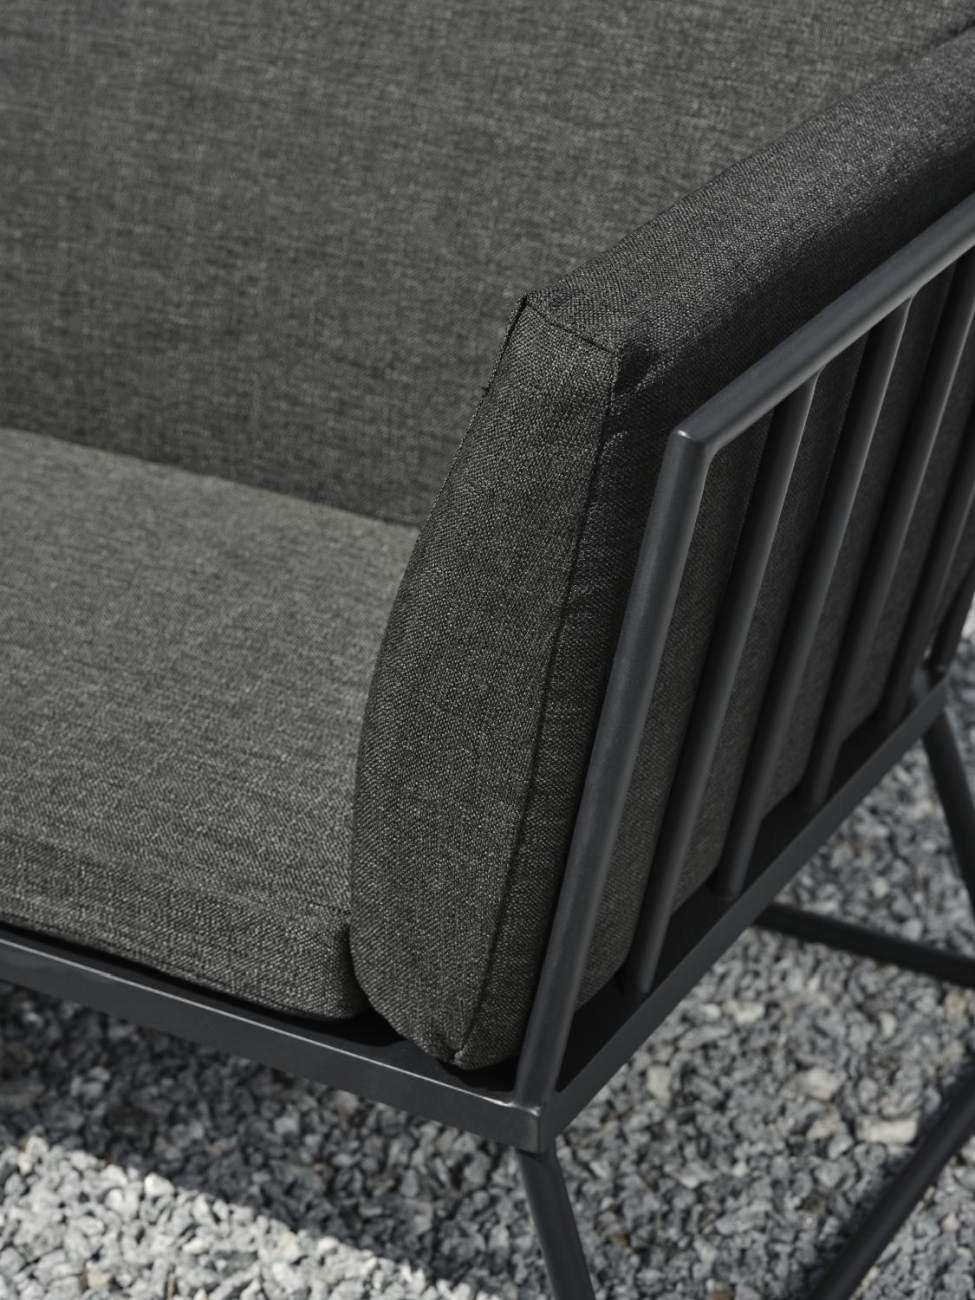 Das Gartensofa Vence überzeugt mit seinem modernen Design. Gefertigt wurde er aus Stoff, welcher einen dunkelgrauen Farbton besitzt. Das Gestell ist aus Metall und hat eine schwarze Farbe. Die Sitzhöhe des Sofas beträgt 43 cm.